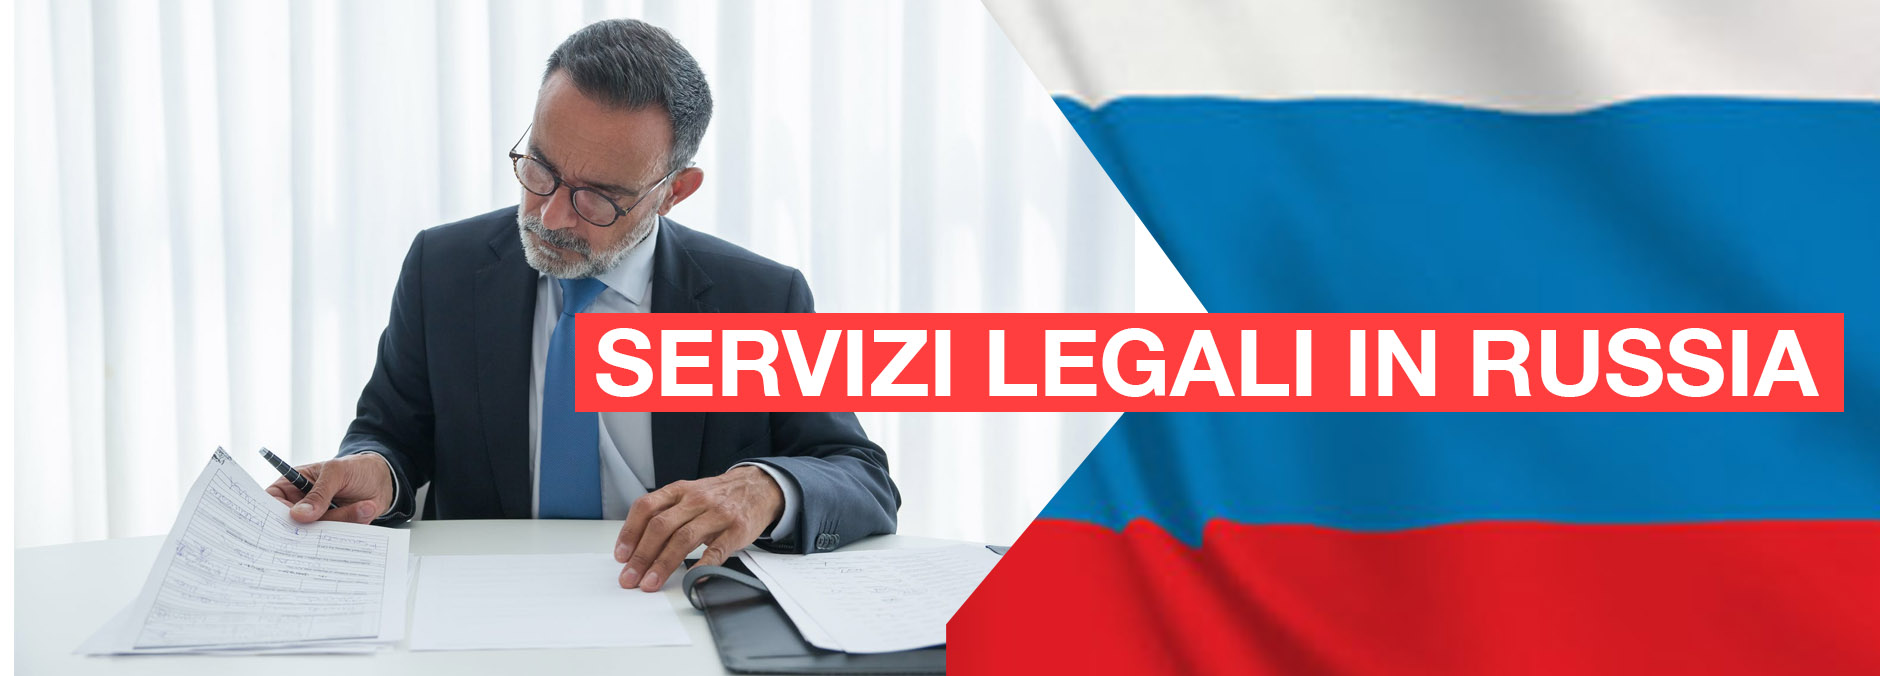 servizi_legali_russia